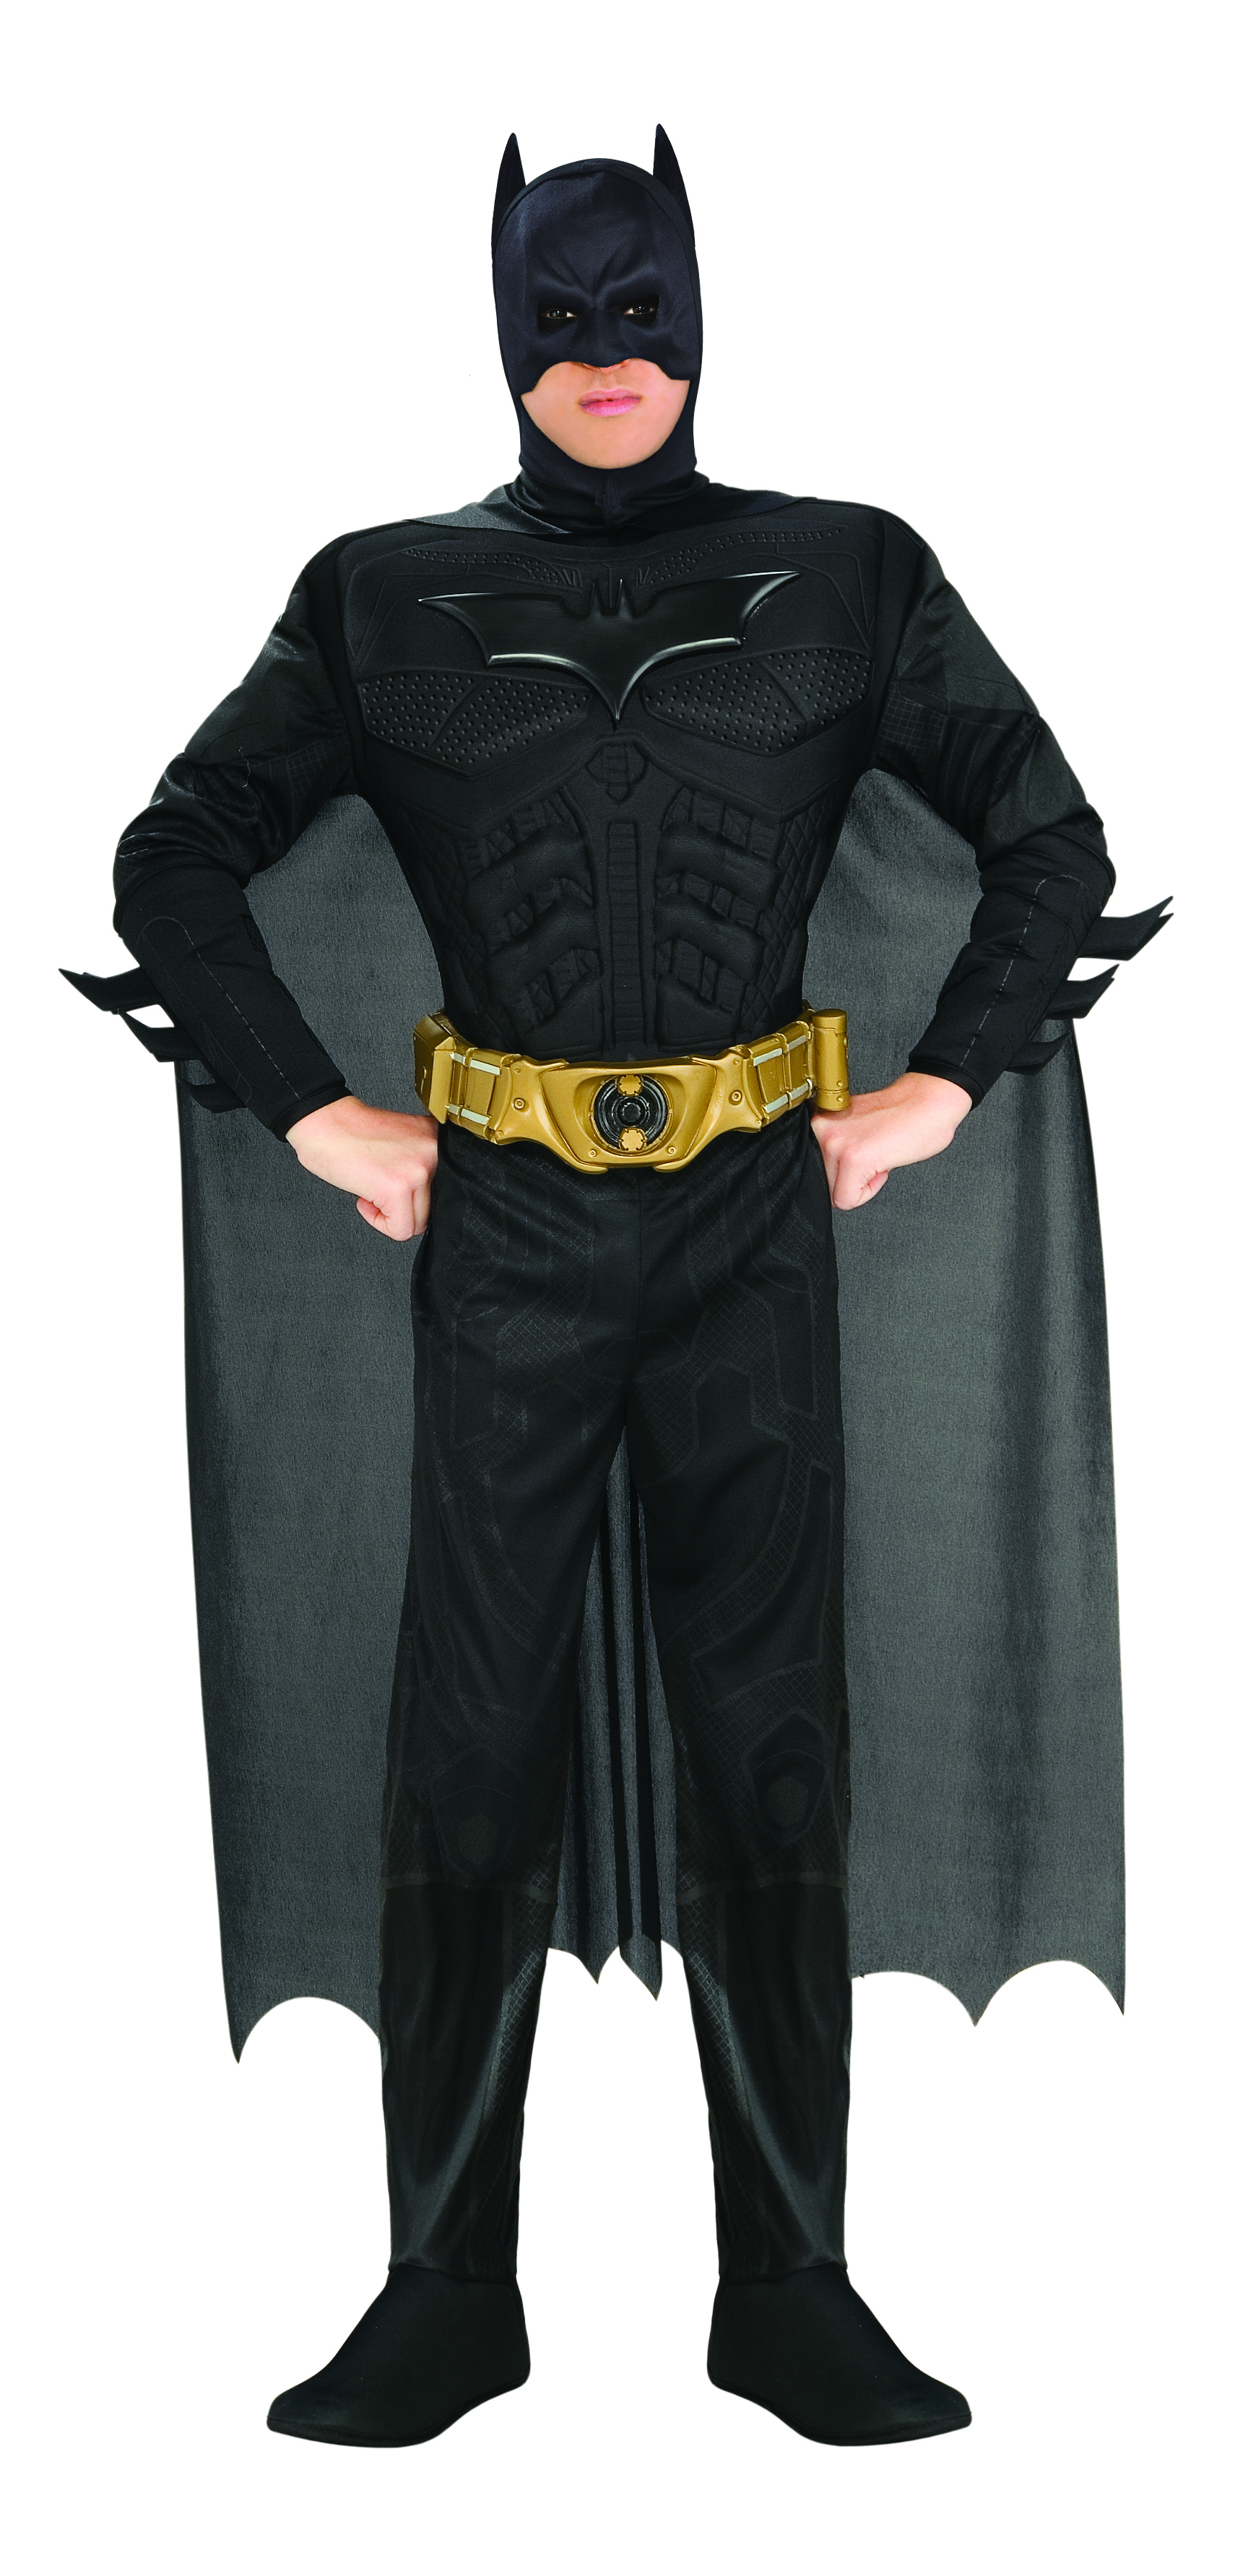 Rubies 3880671 - Batman Kostüm DELUXE für Erwachsene - Gr. M L XL - Karneval Halloween